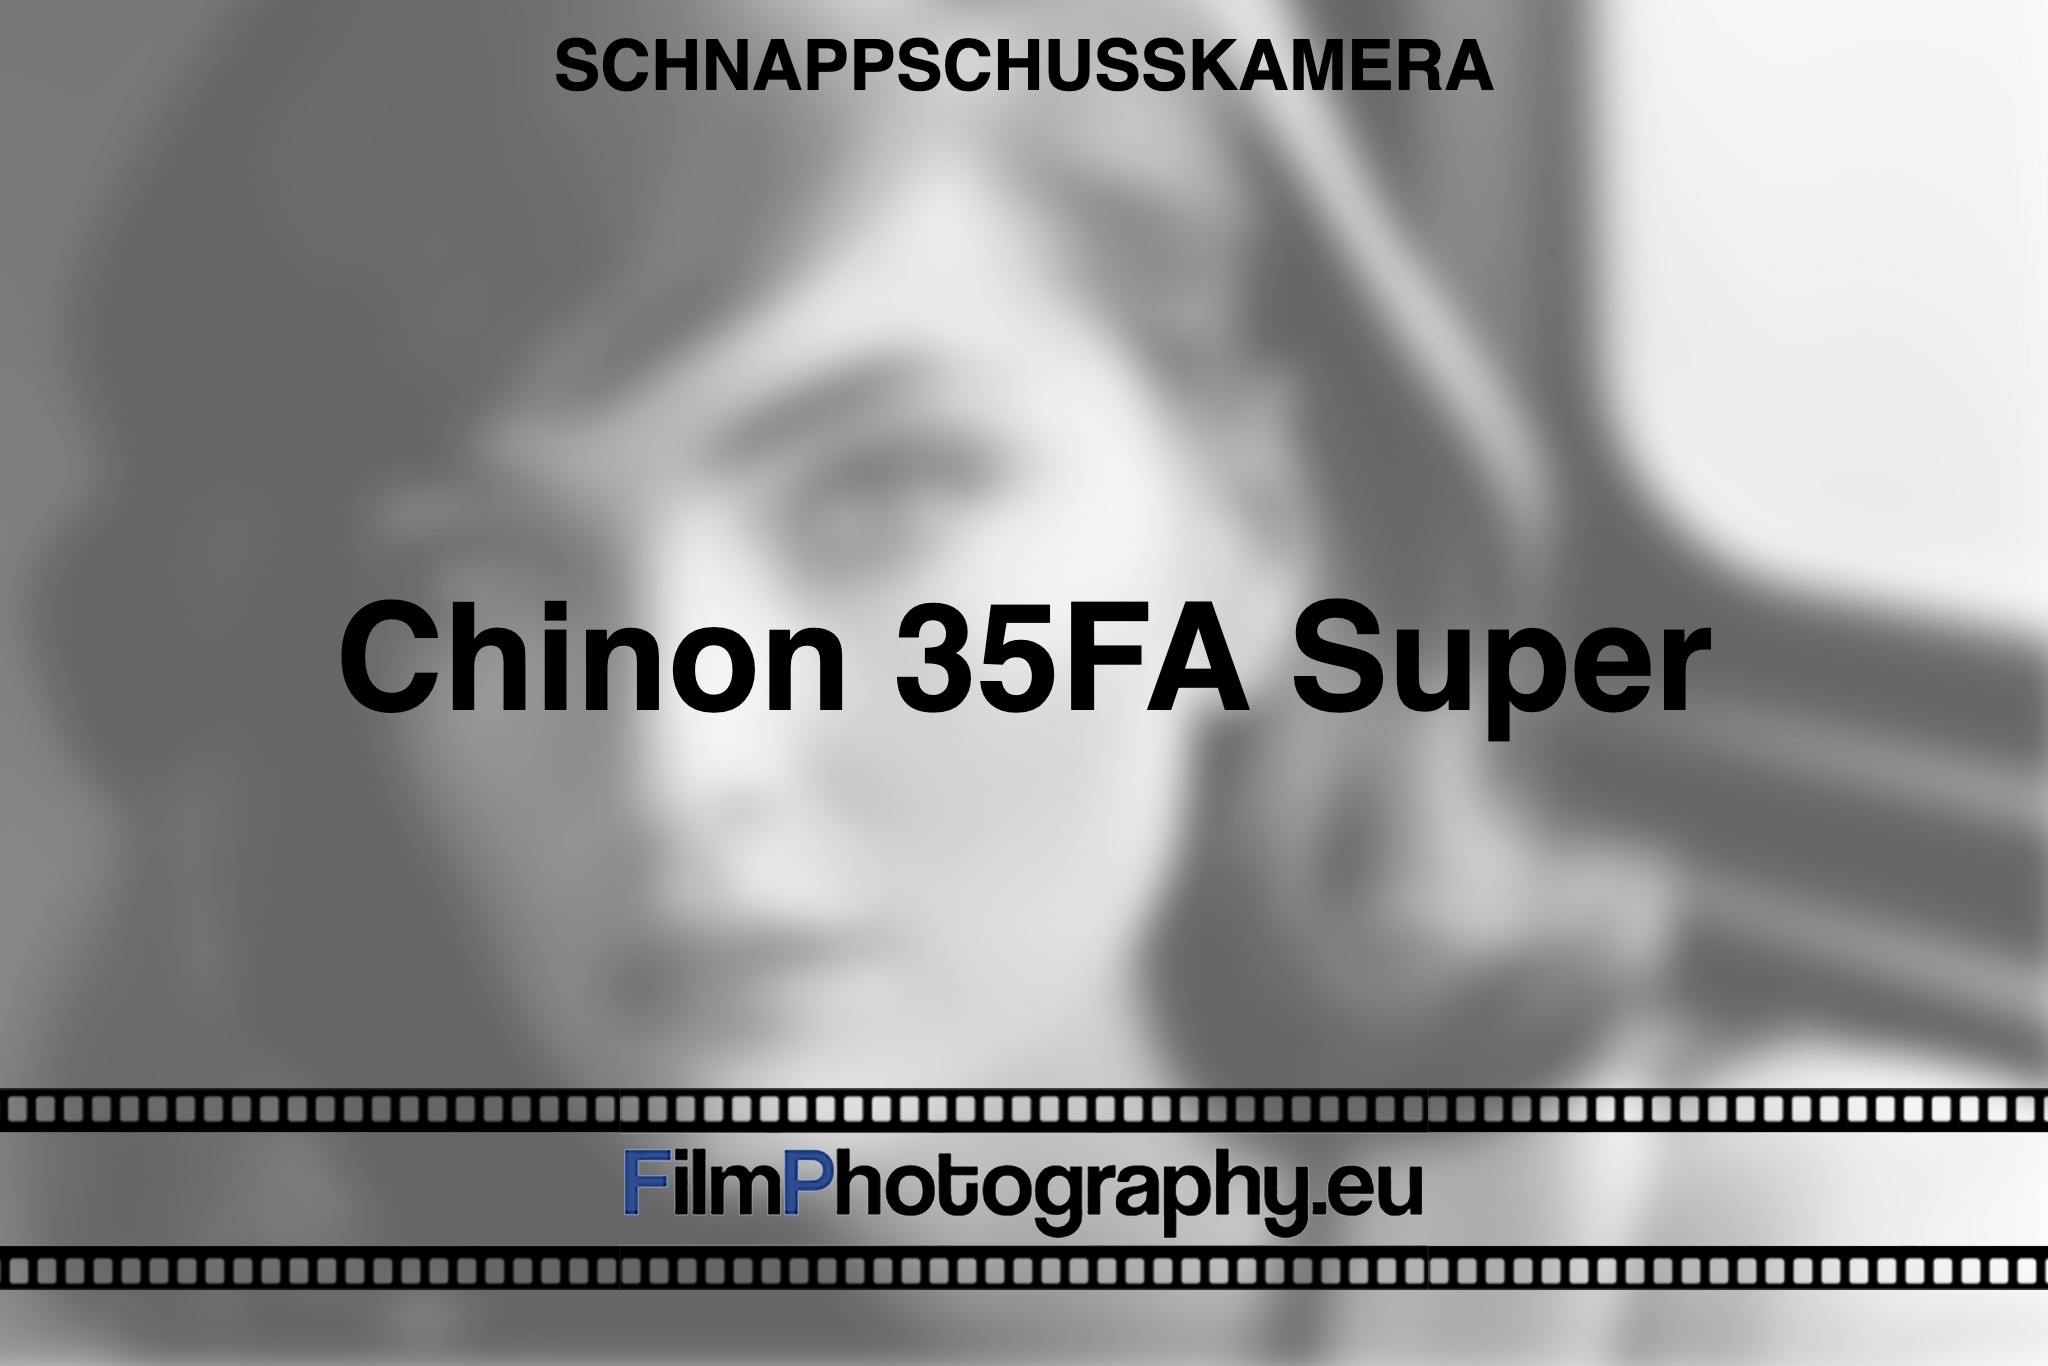 chinon-35fa-super-schnappschusskamera-bnv